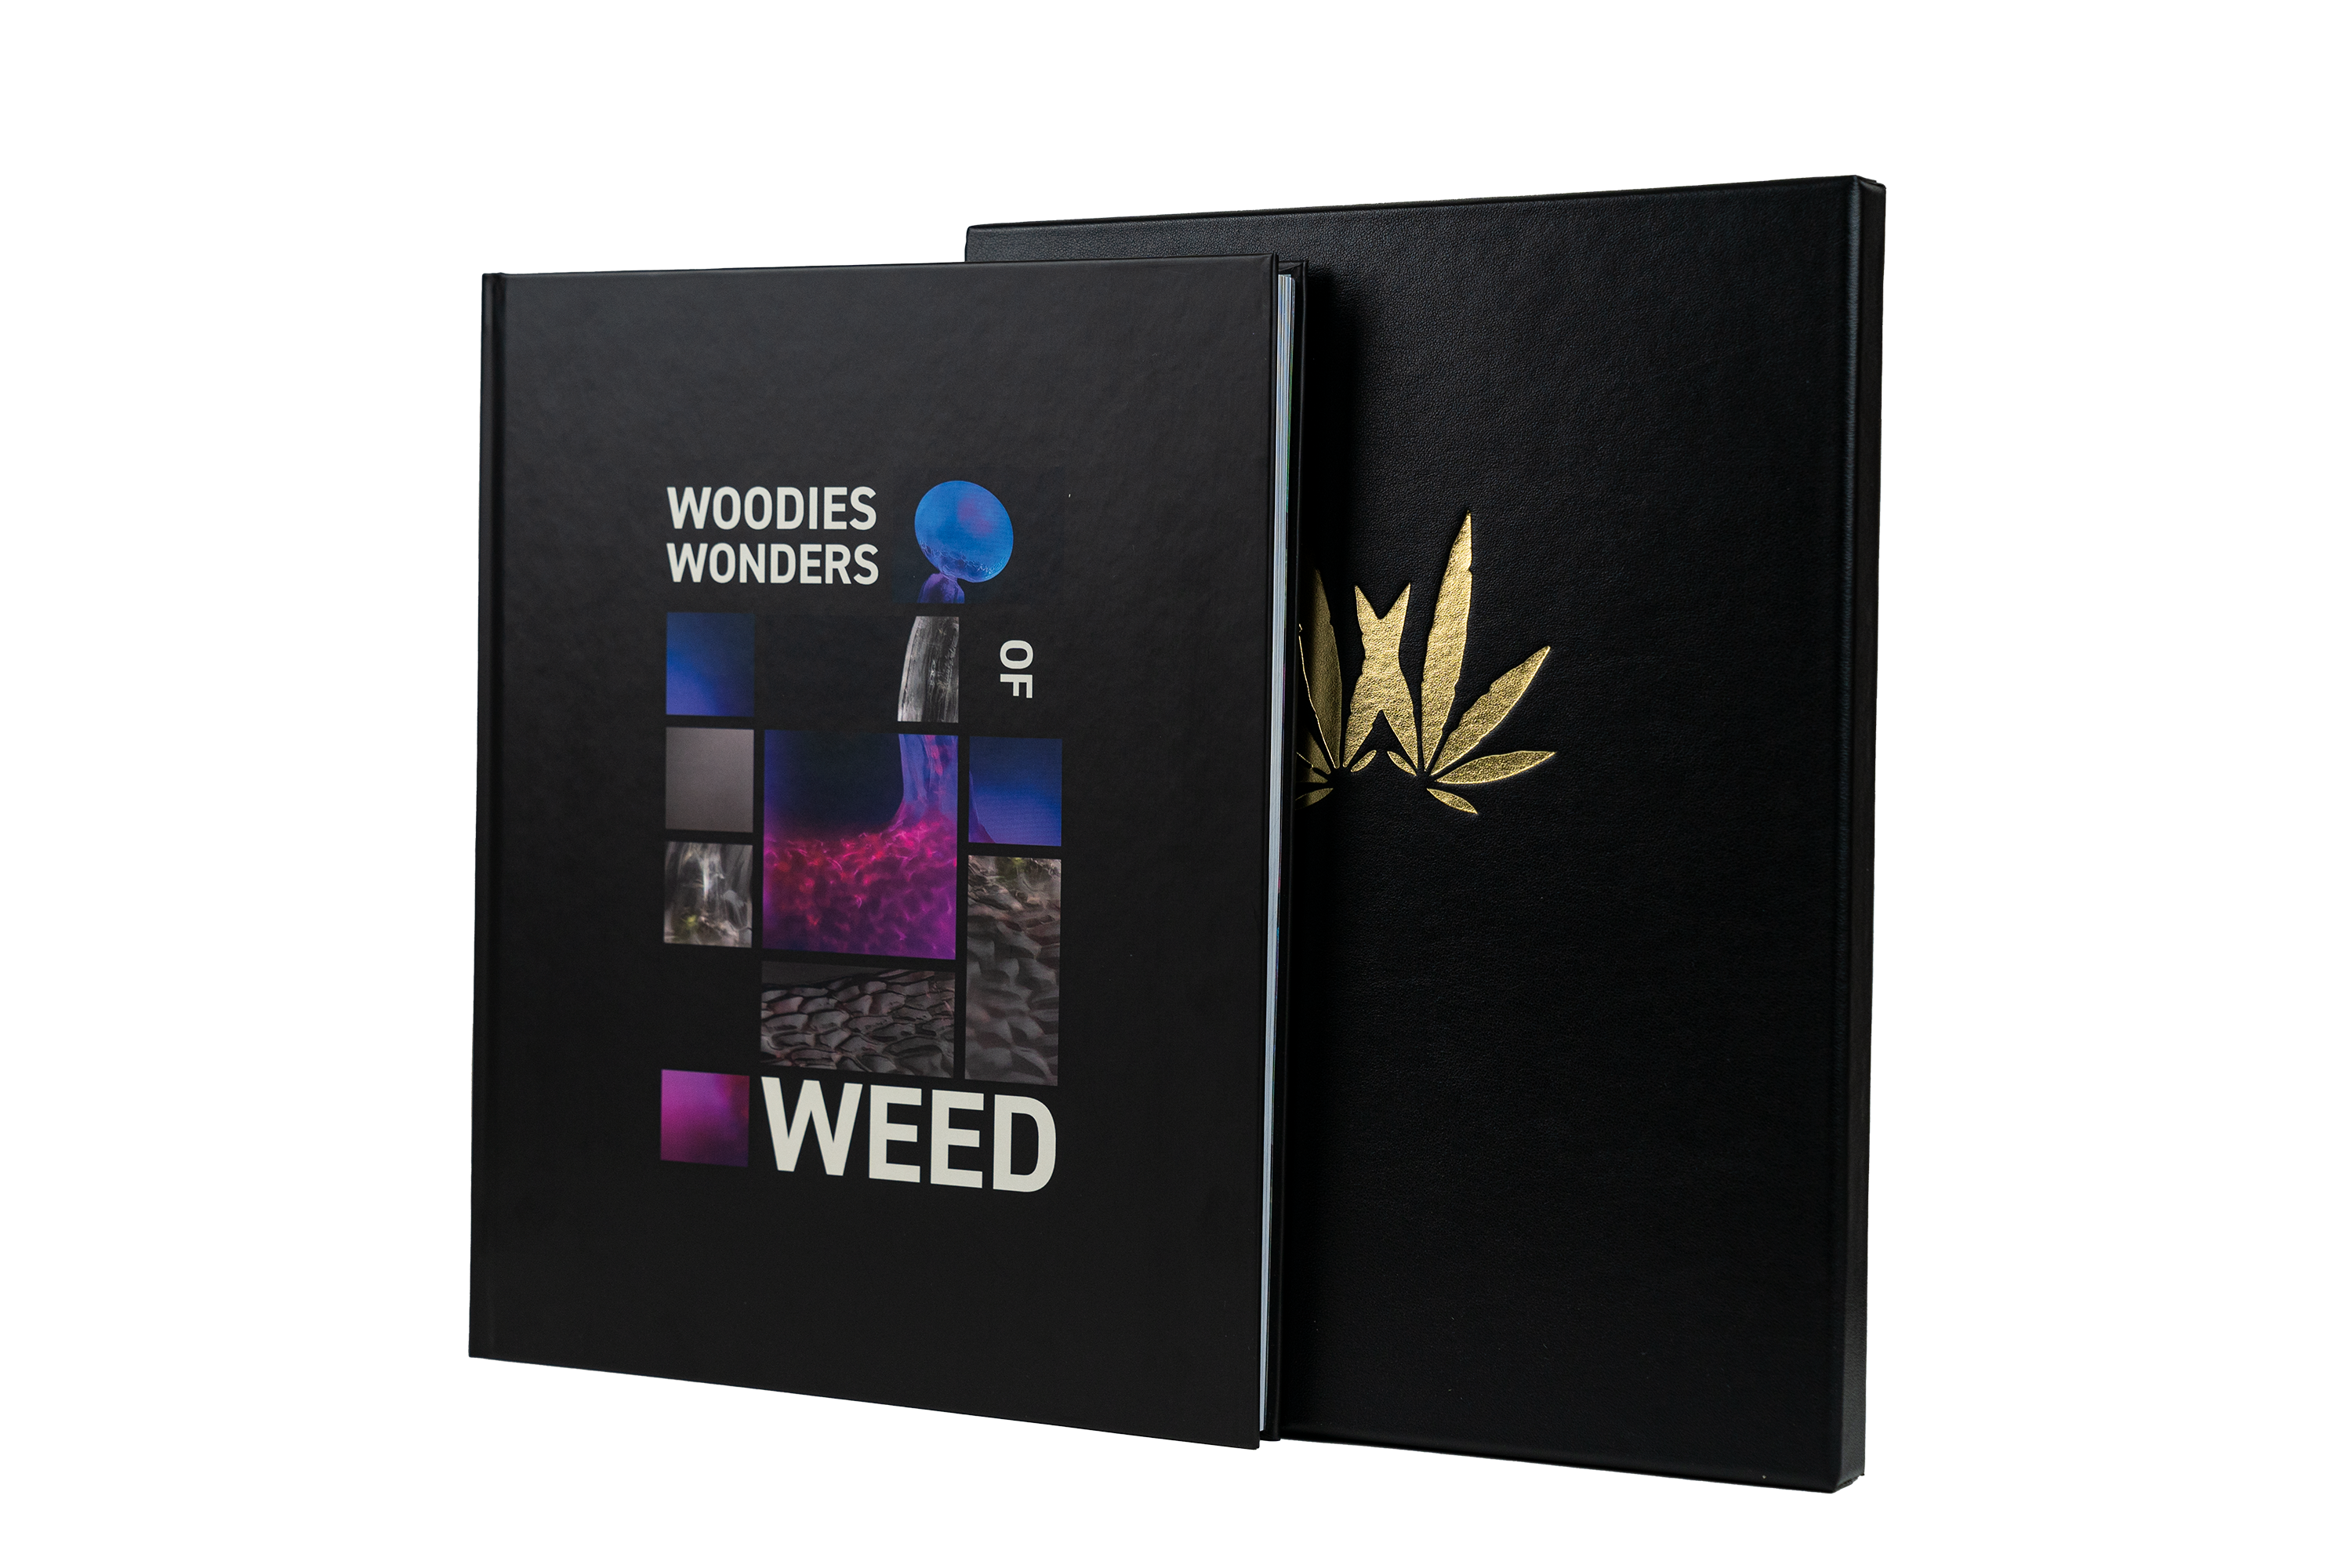 woodies-wonders-of-weed-VII